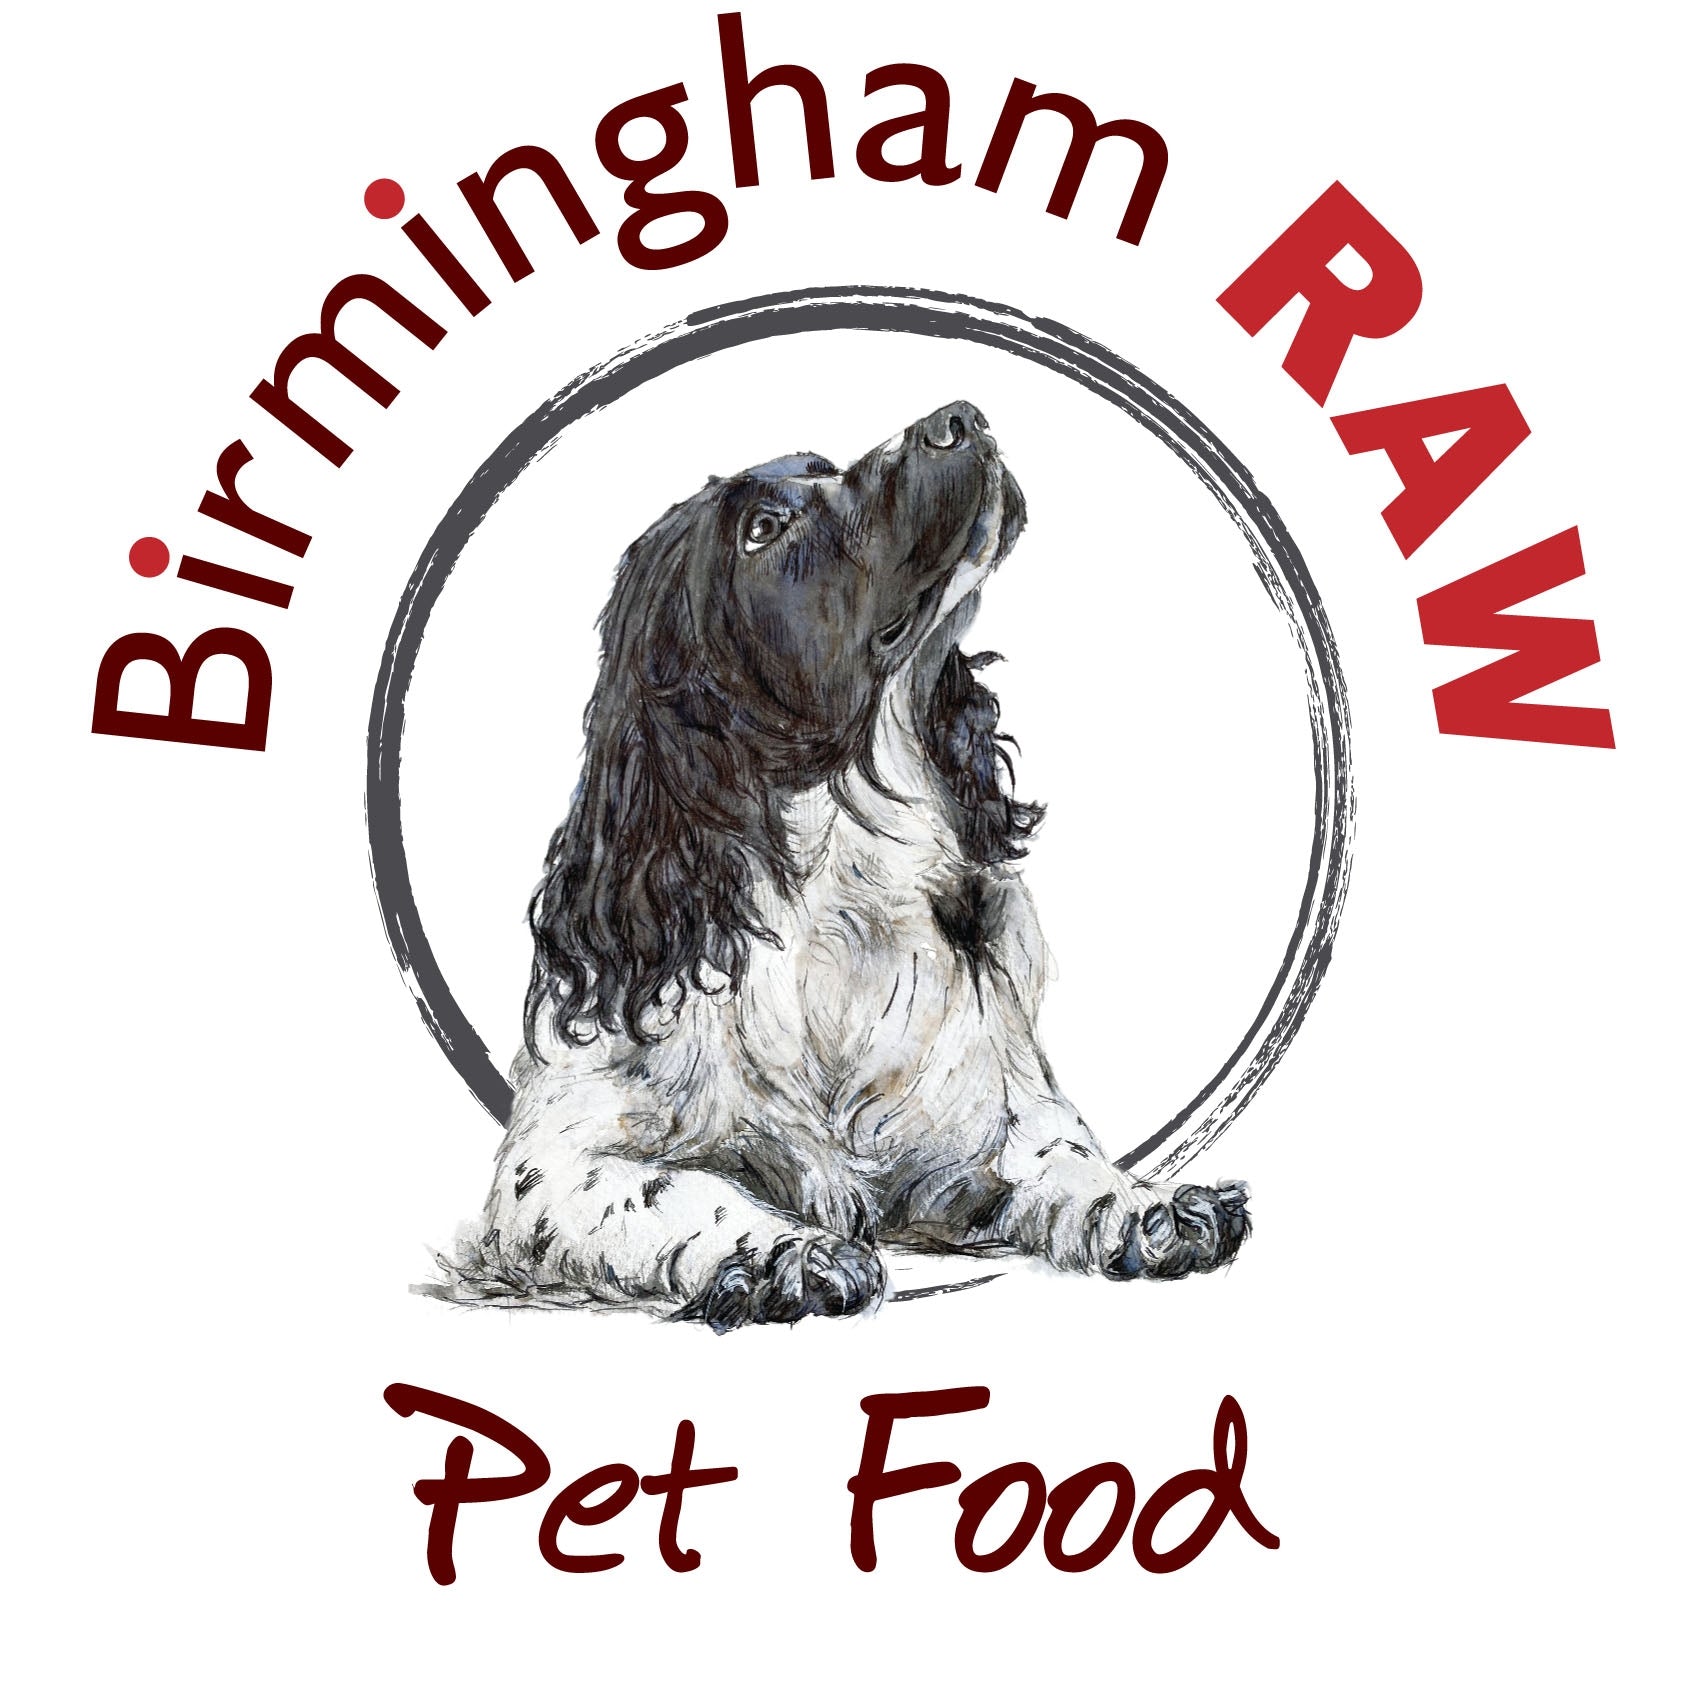 Birmingham Raw Chicken & Beef Complete (454g)